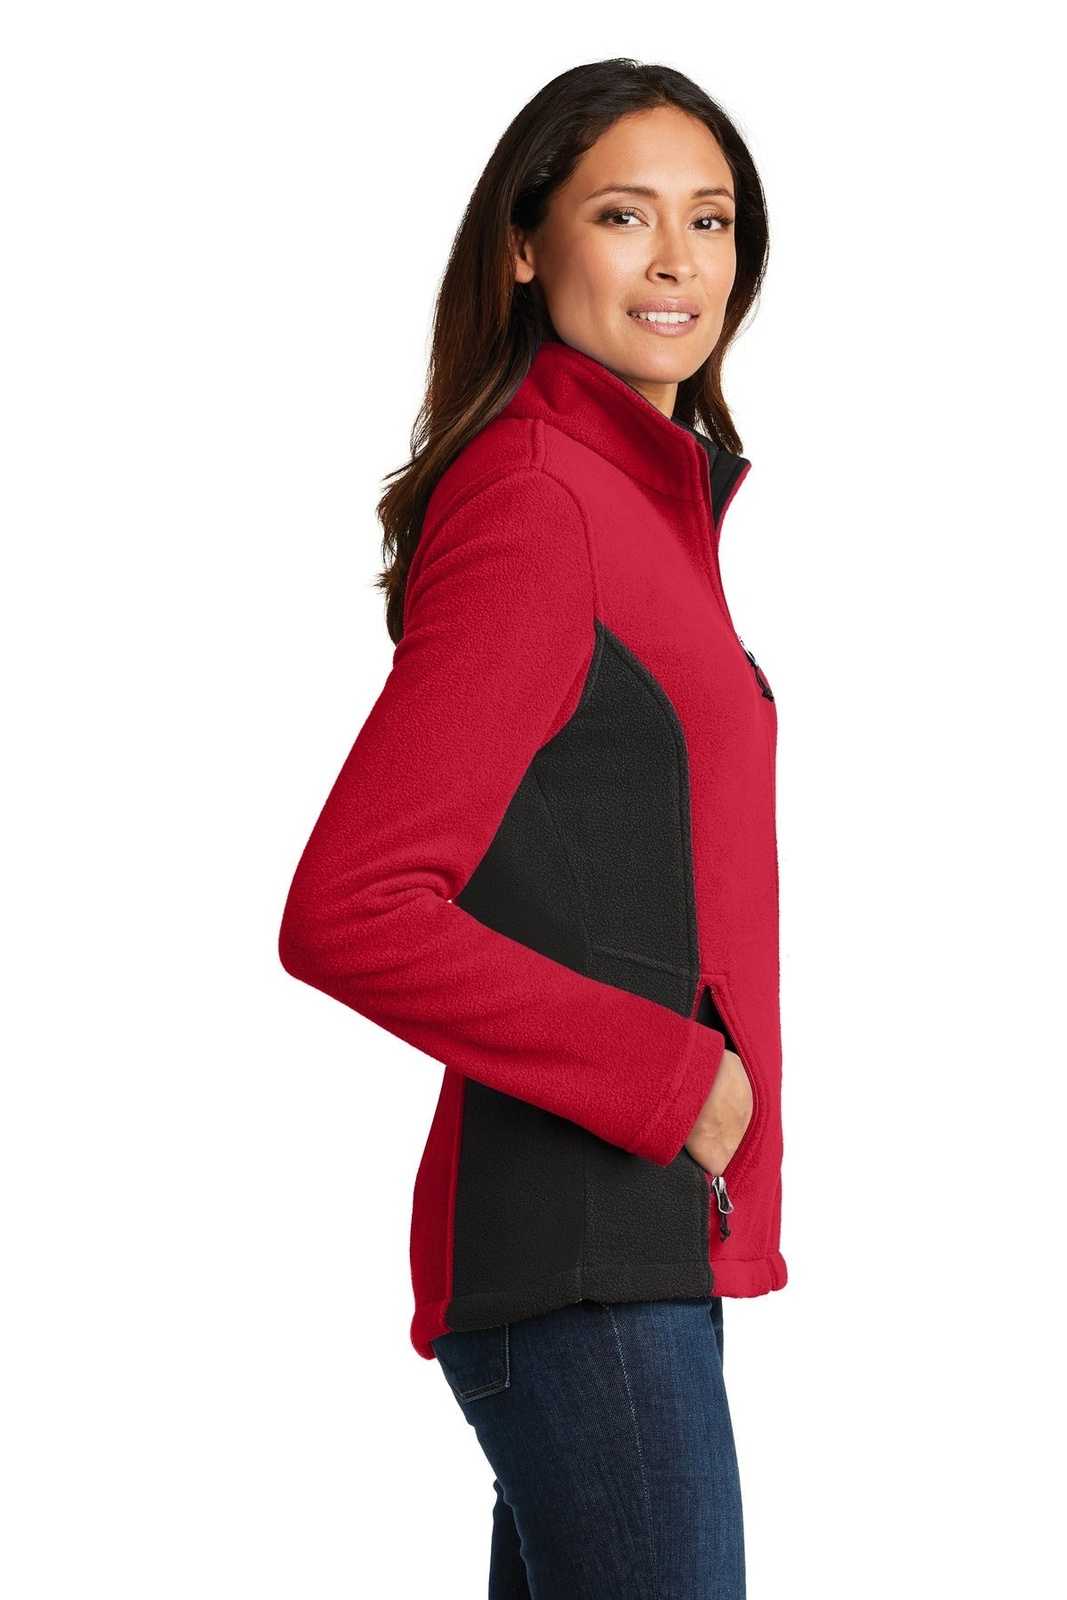 Port Authority L216 Ladies Colorblock Value Fleece Jacket - Rich Red Black - HIT a Double - 3